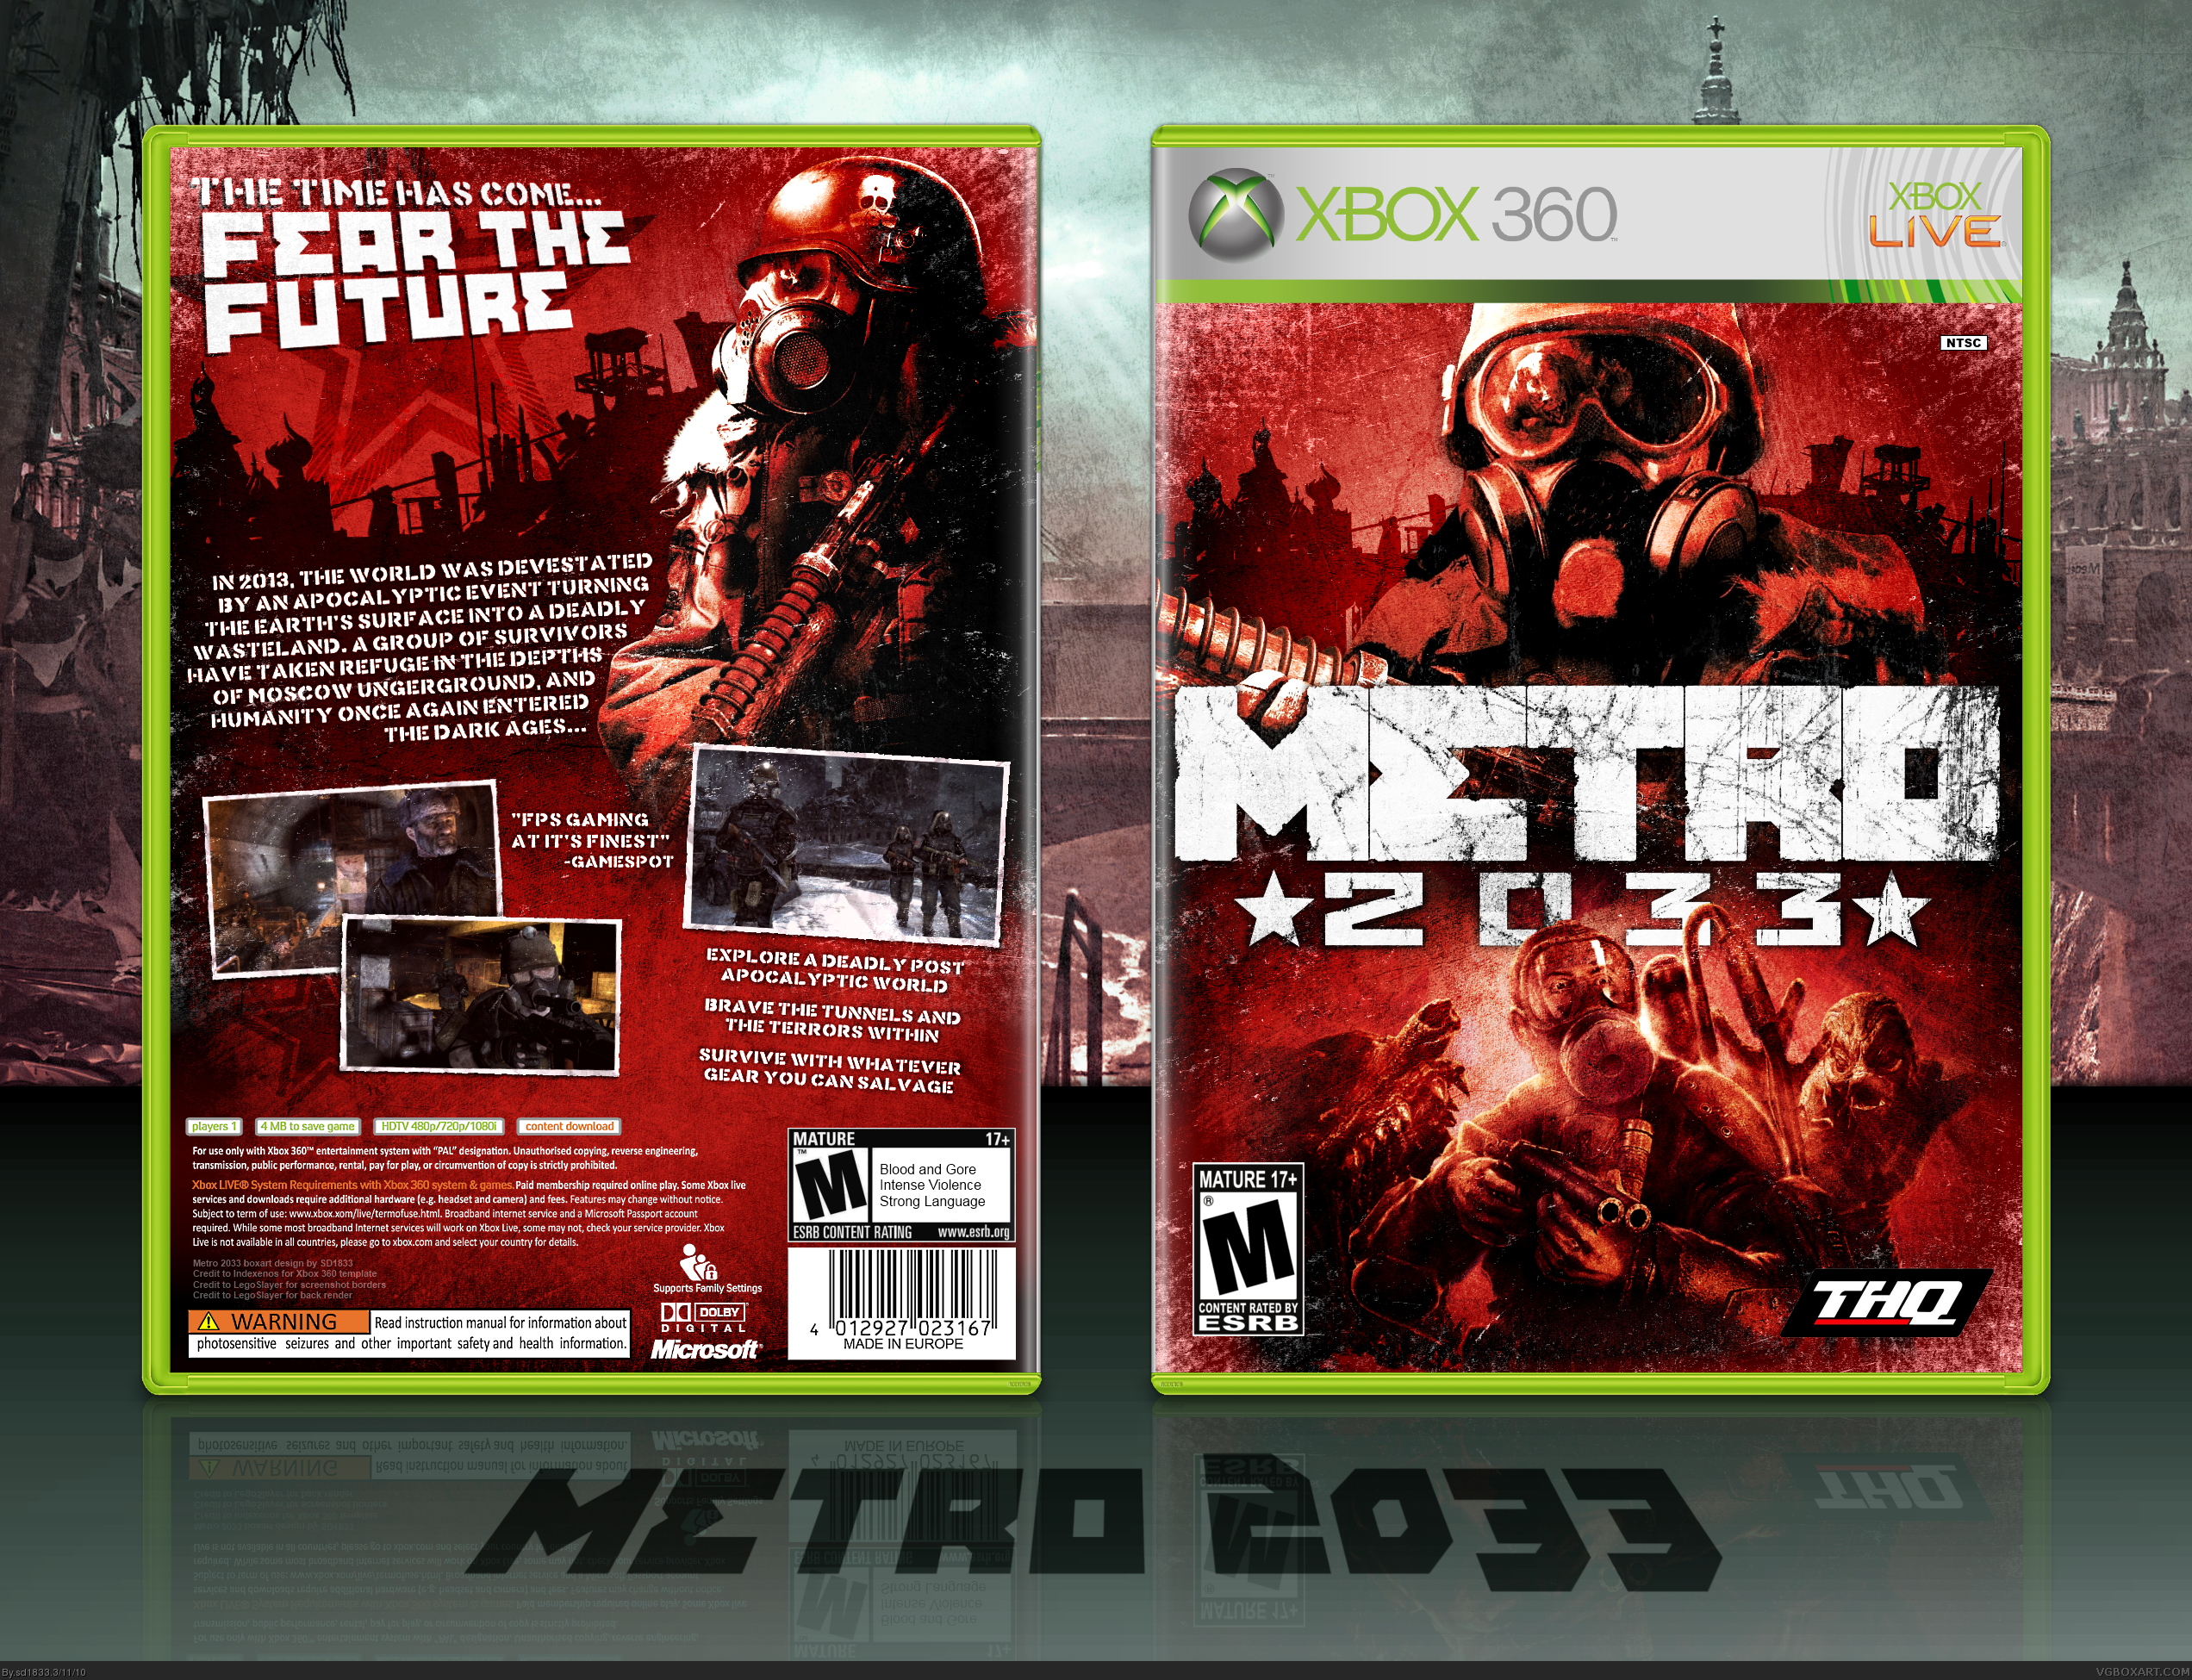 Диск Xbox 360 Metro 2033. Metro 2033 Xbox 360 обложка. Метро 2033 диск на Xbox 360. Метро 2033 на хбокс 360.